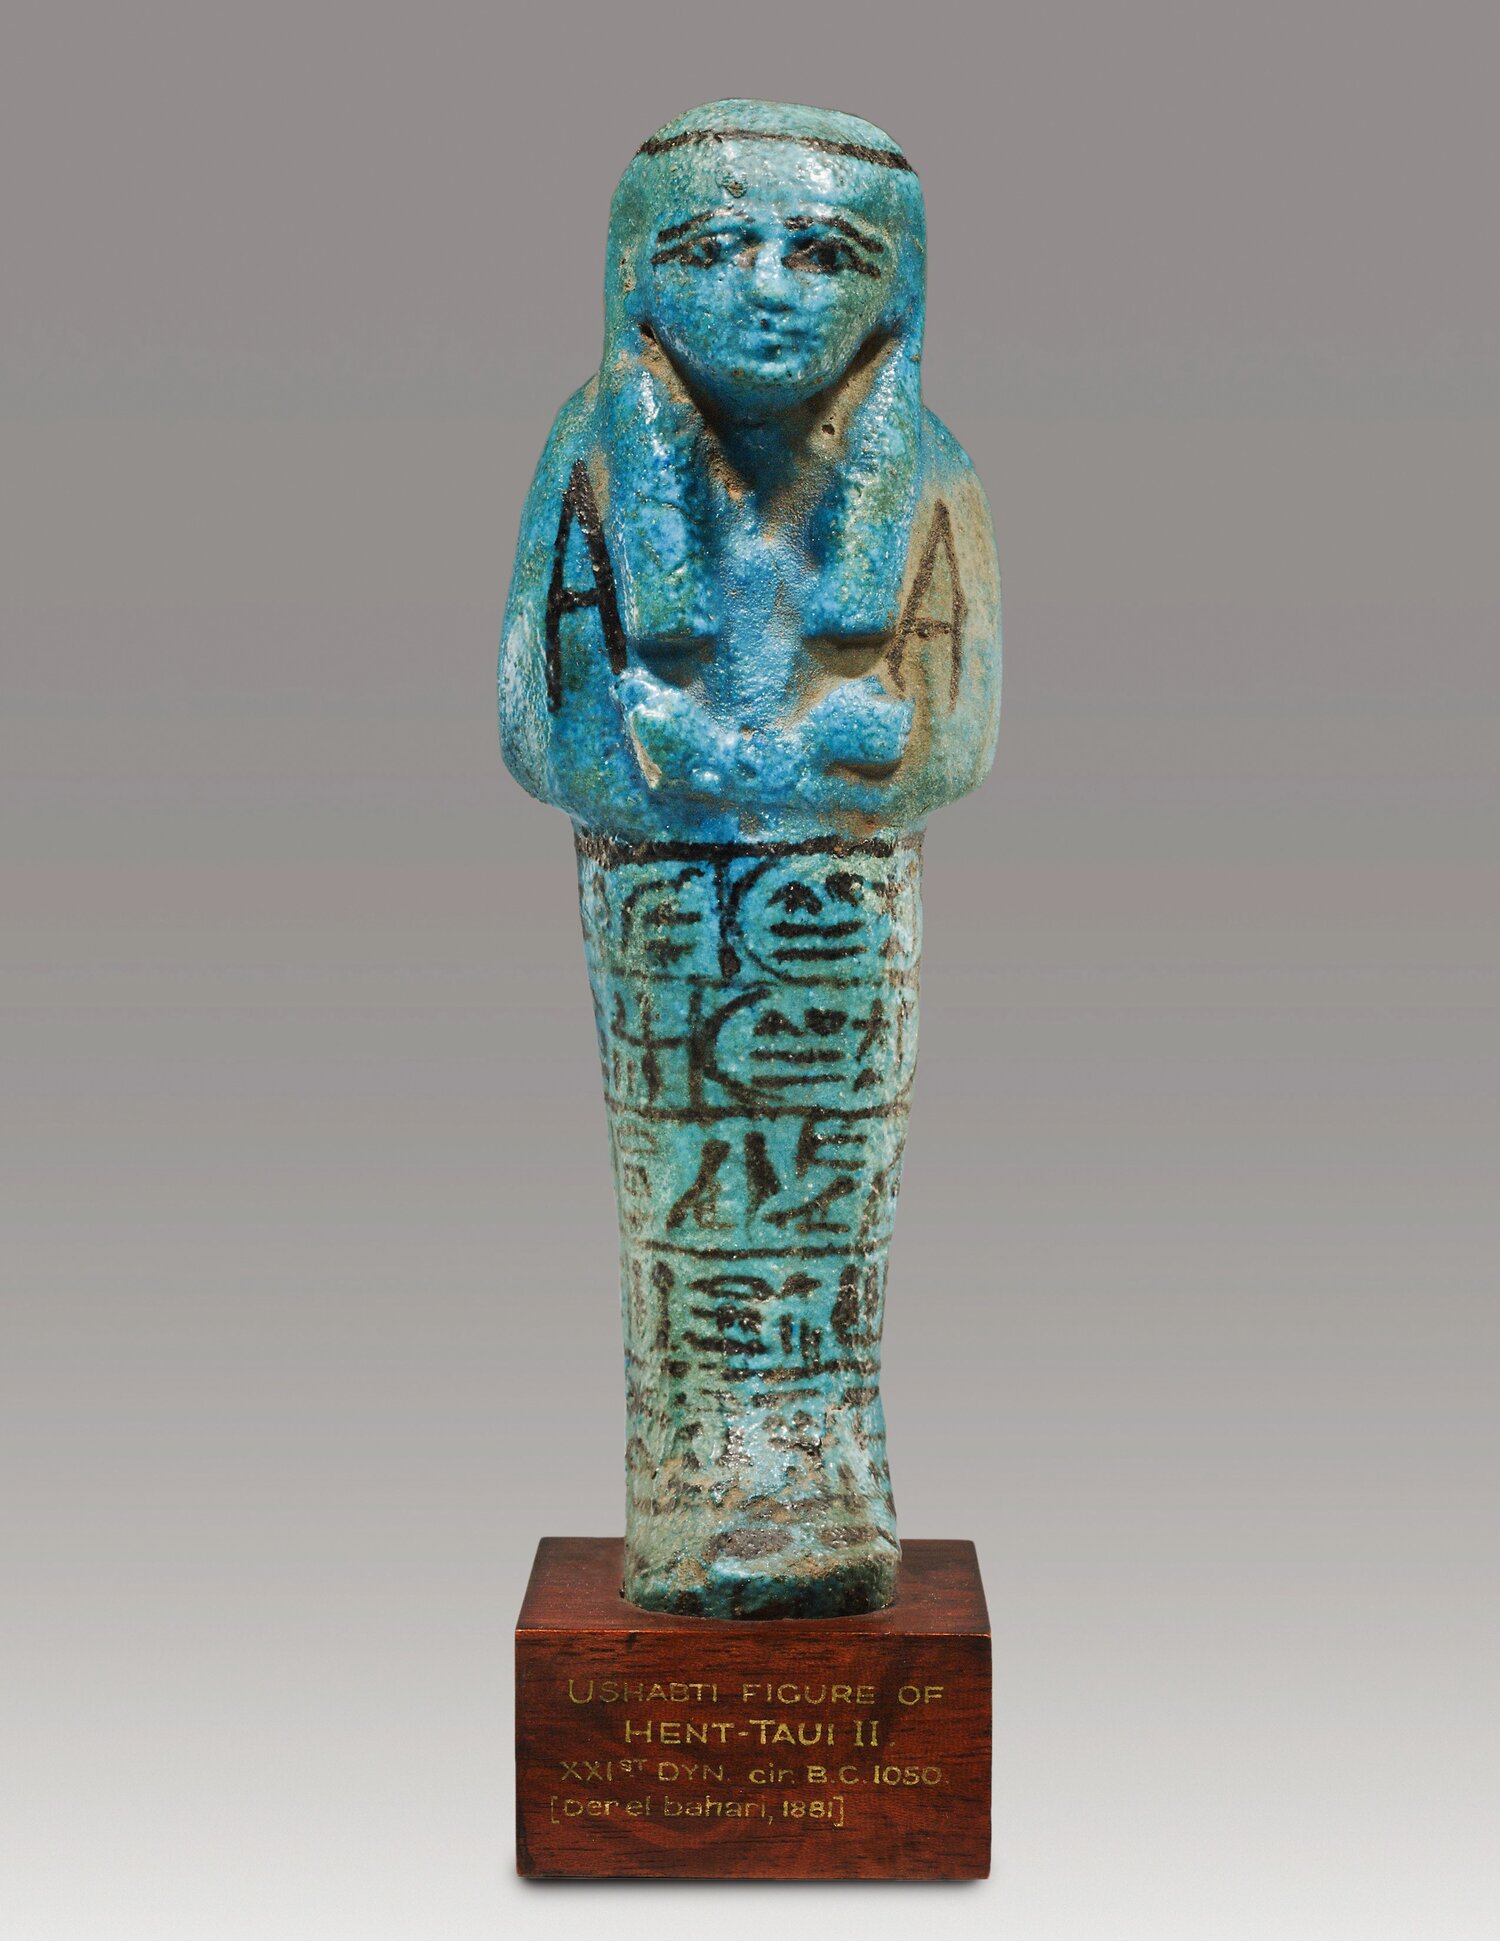 Statuette of Amun, Third Intermediate Period